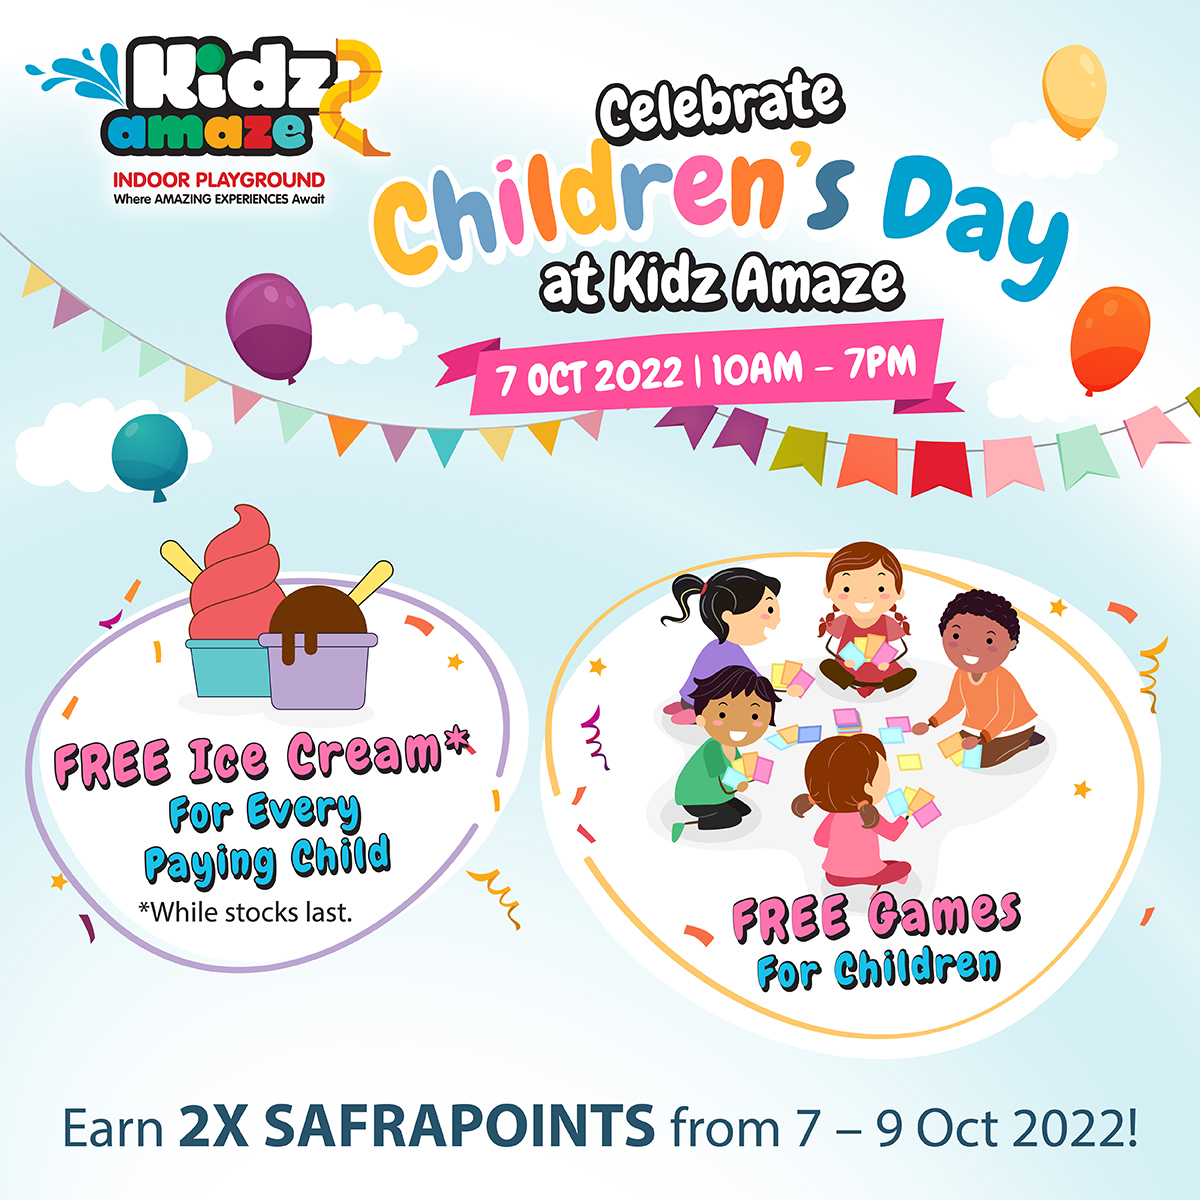 Kidz Amaze Children's Day 2022